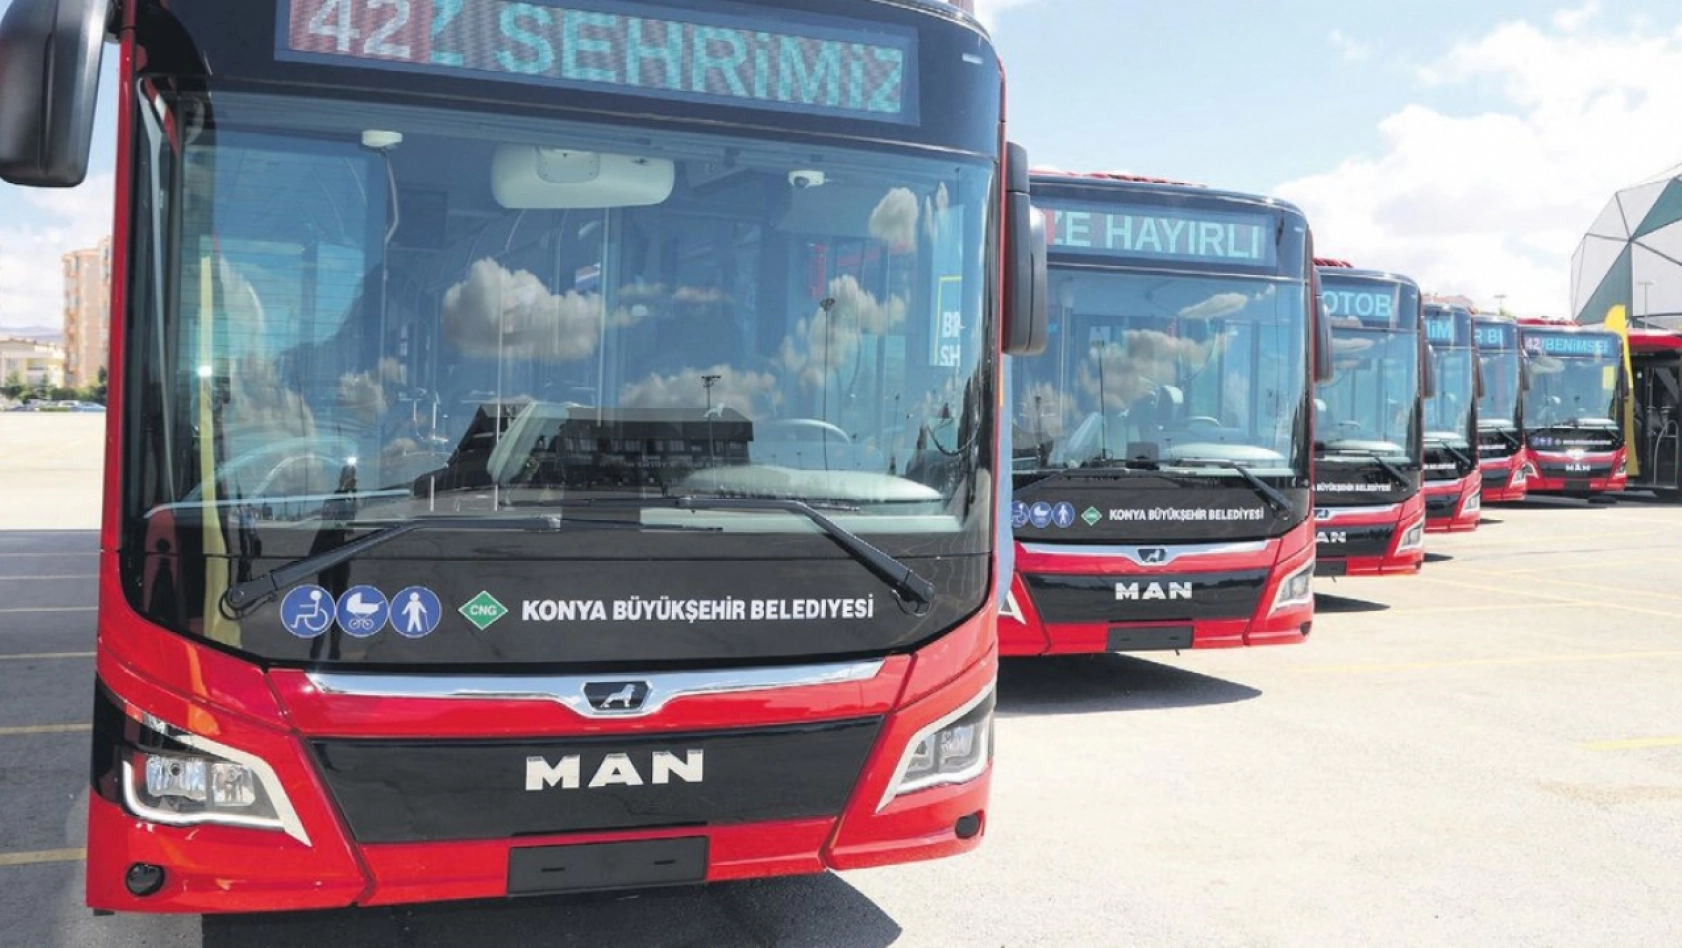 Konya'da bayramda toplu taşıma ücretsiz